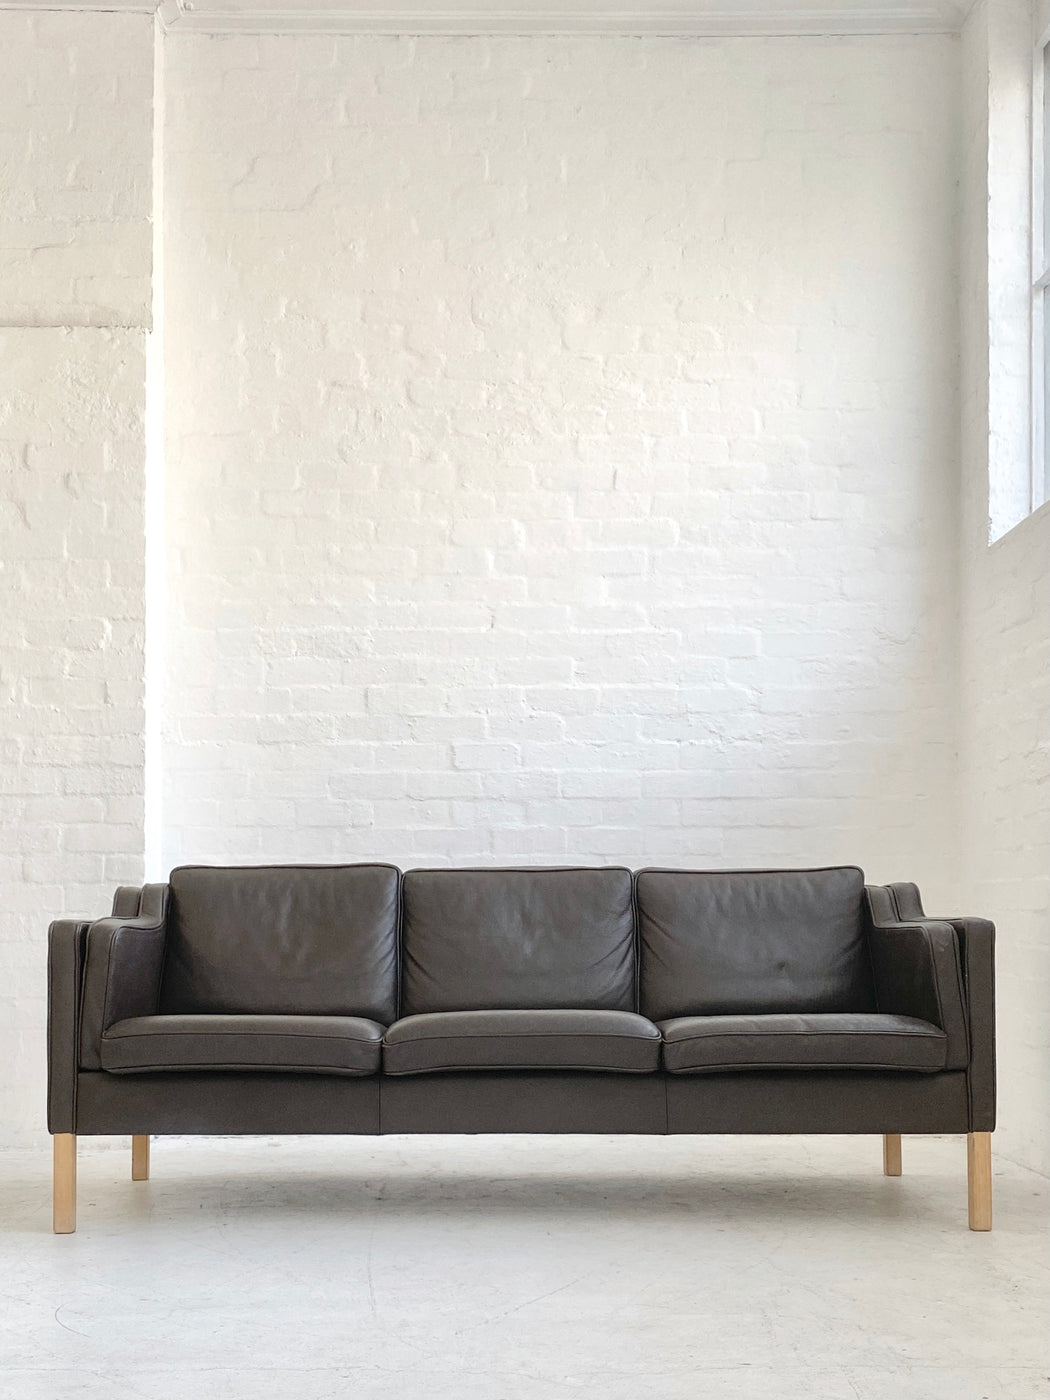 Danish Leather Sofa